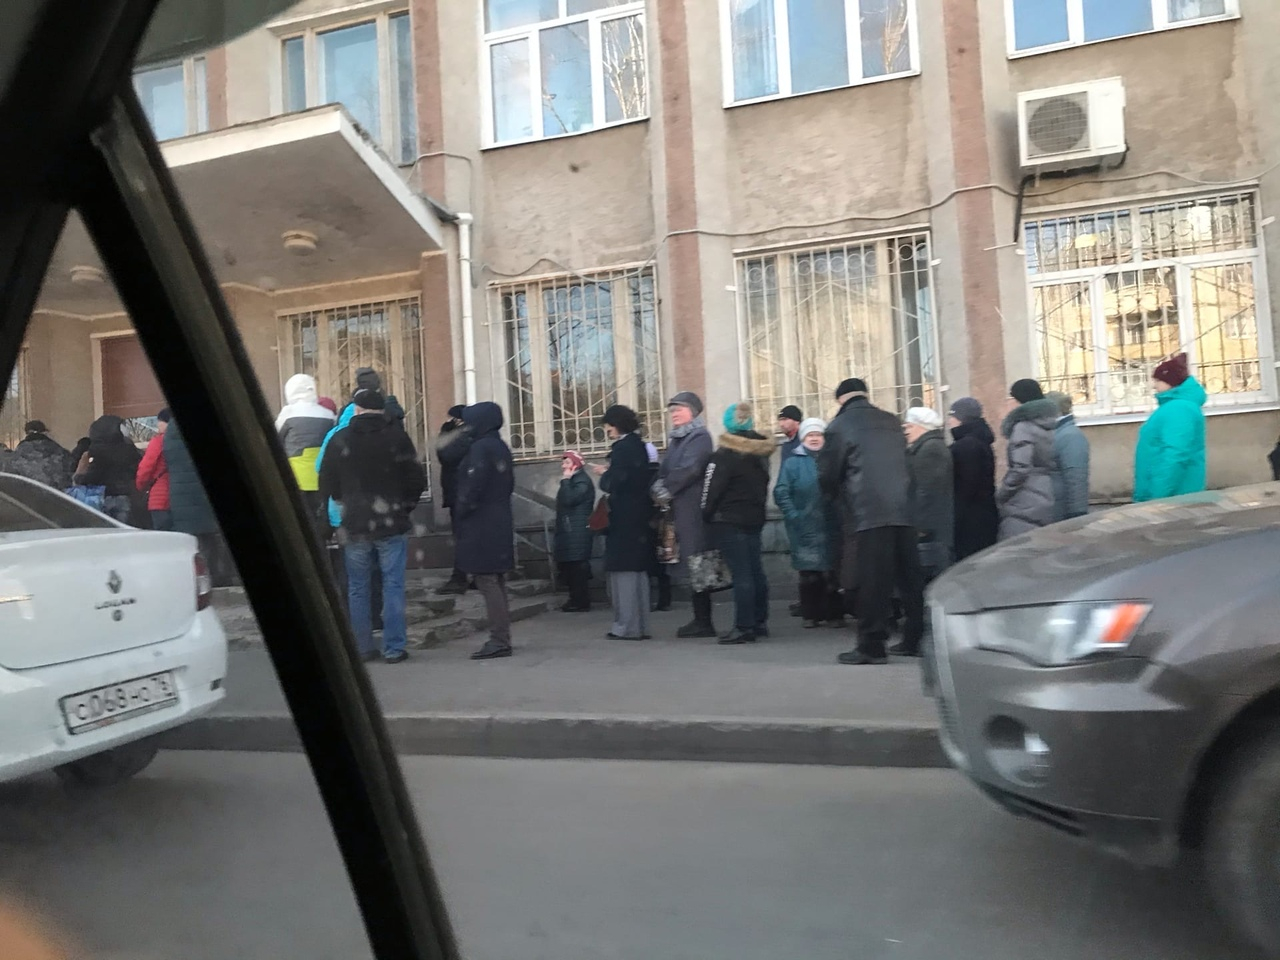 Дикие очереди на улице в Ярославле из-за коронавируса: в какие конторы стоят люди